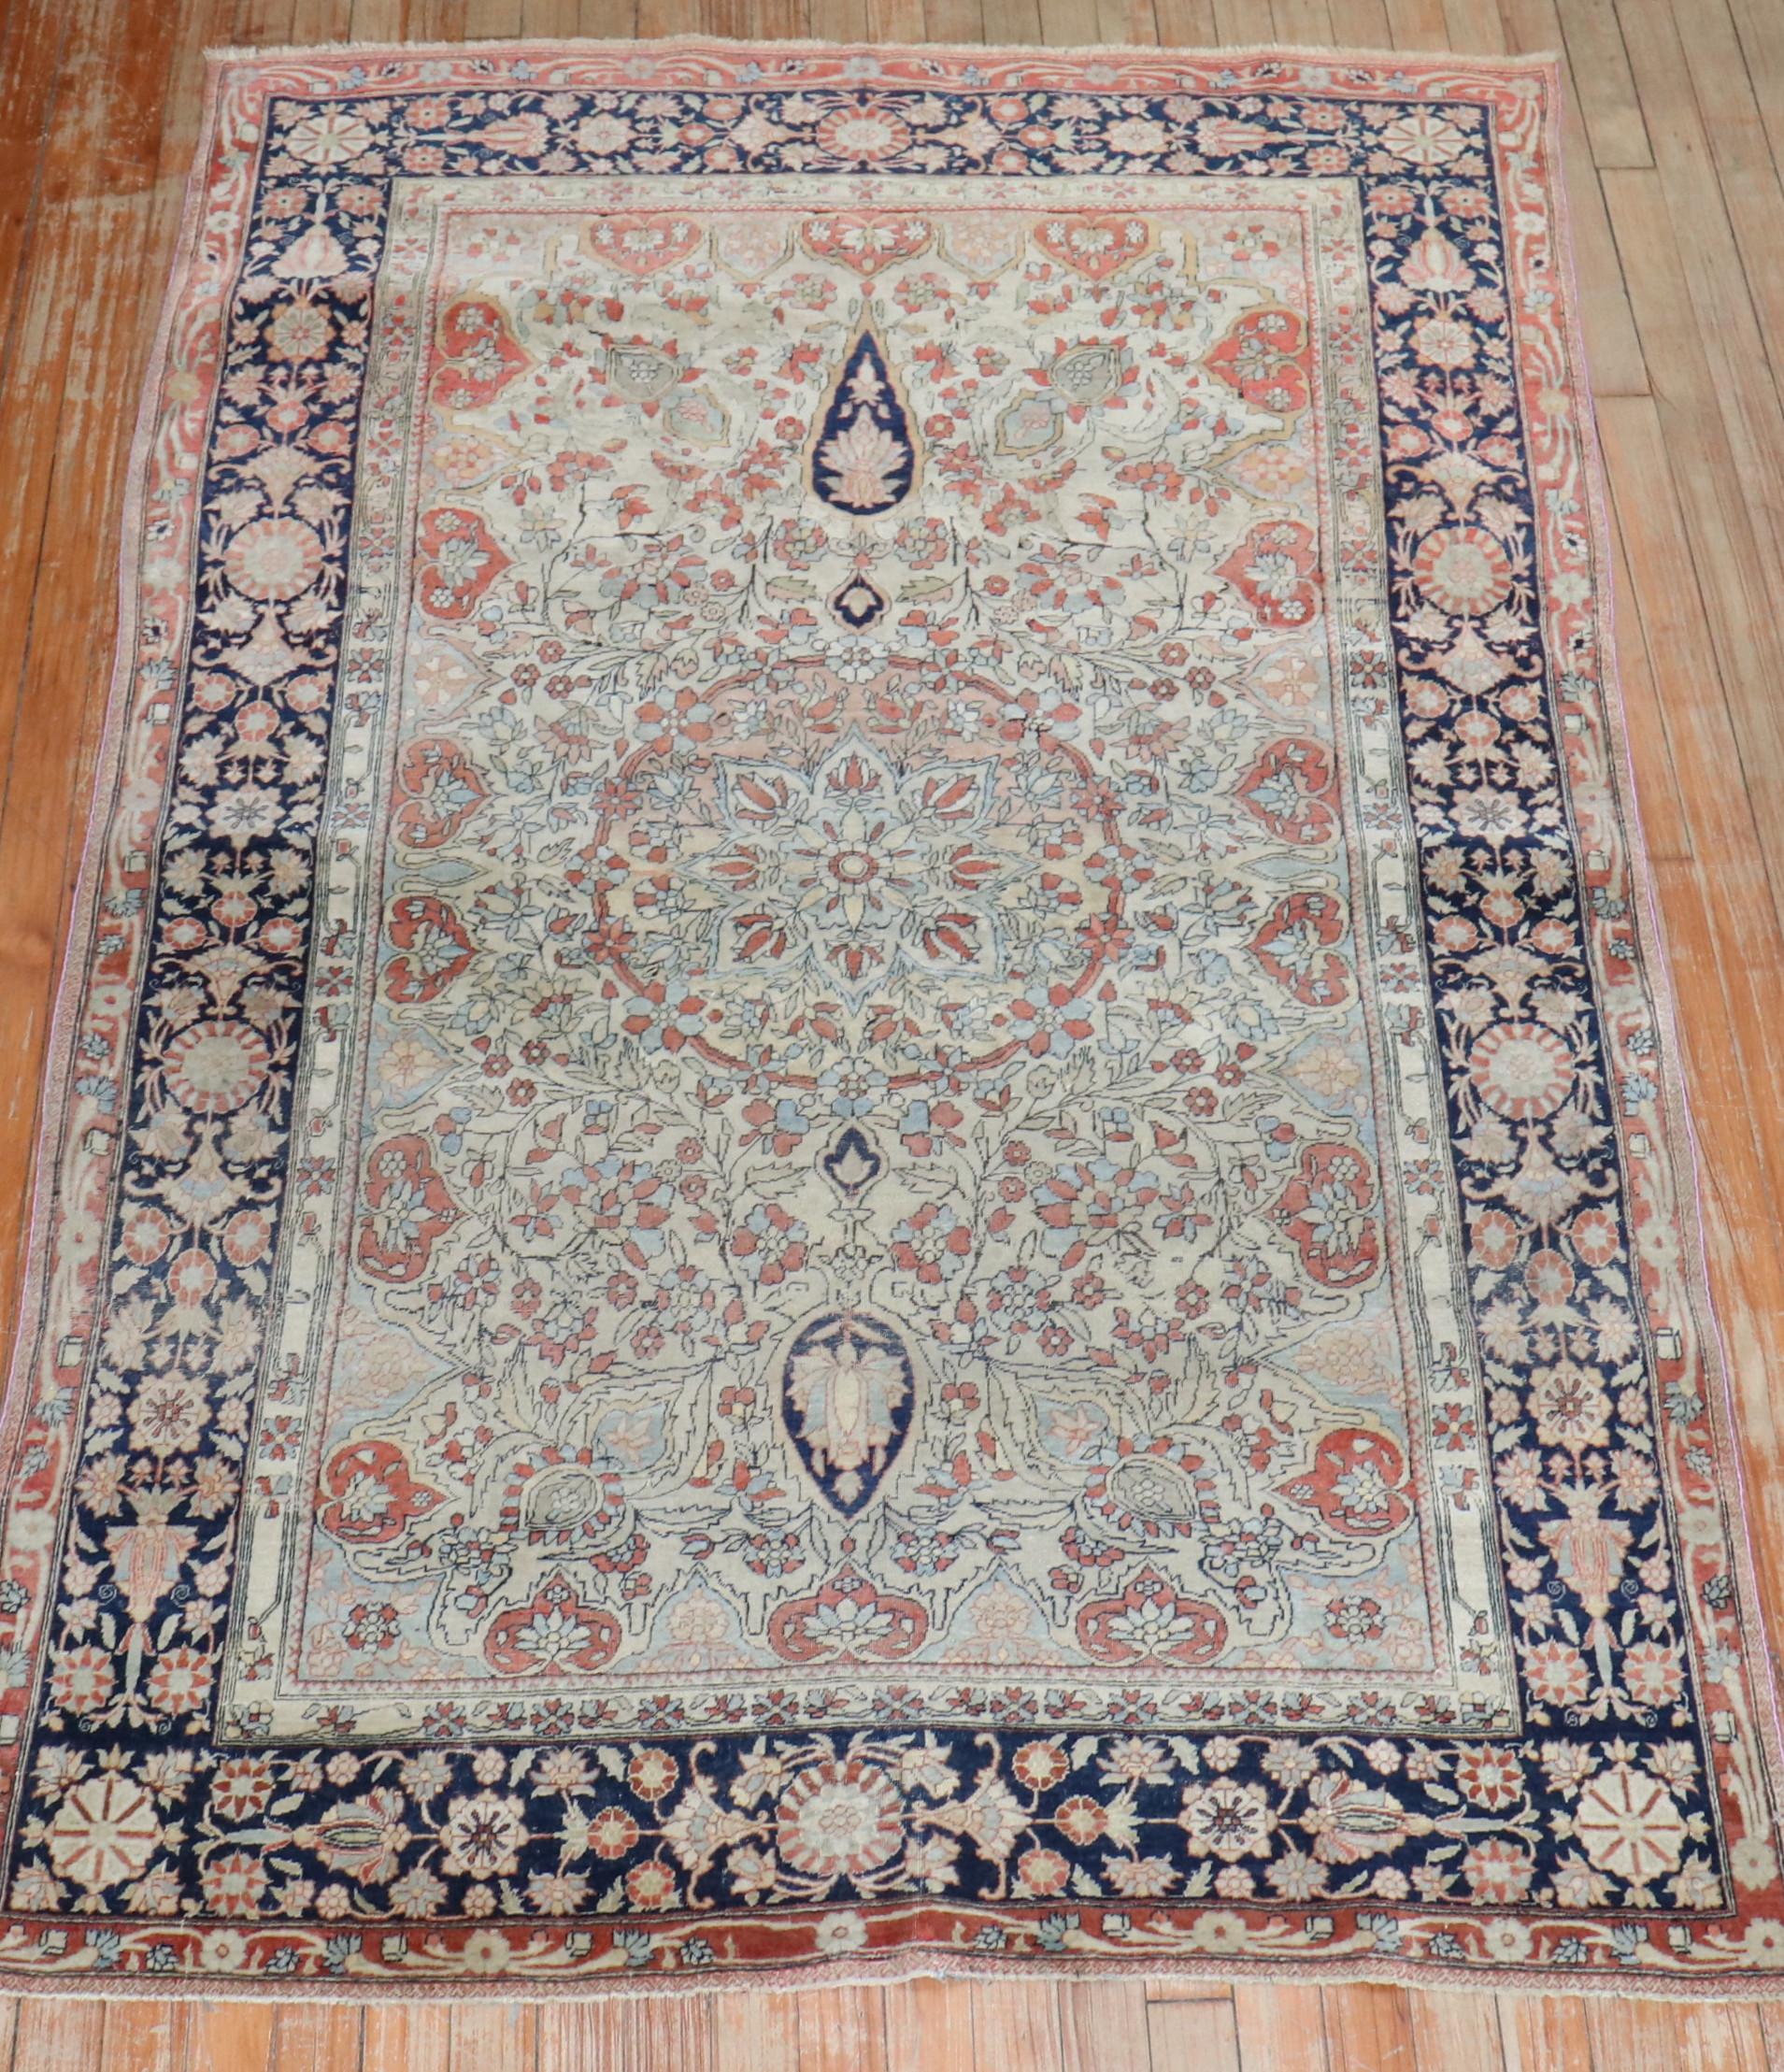 Ende 19. Jahrhundert  Mohtasham Kashan-Teppich

4'3'' x 6'6''

Die seltenste Gruppe von Kashan-Teppichen mit nicht-traditionellen Designs und Farbpaletten sind die 